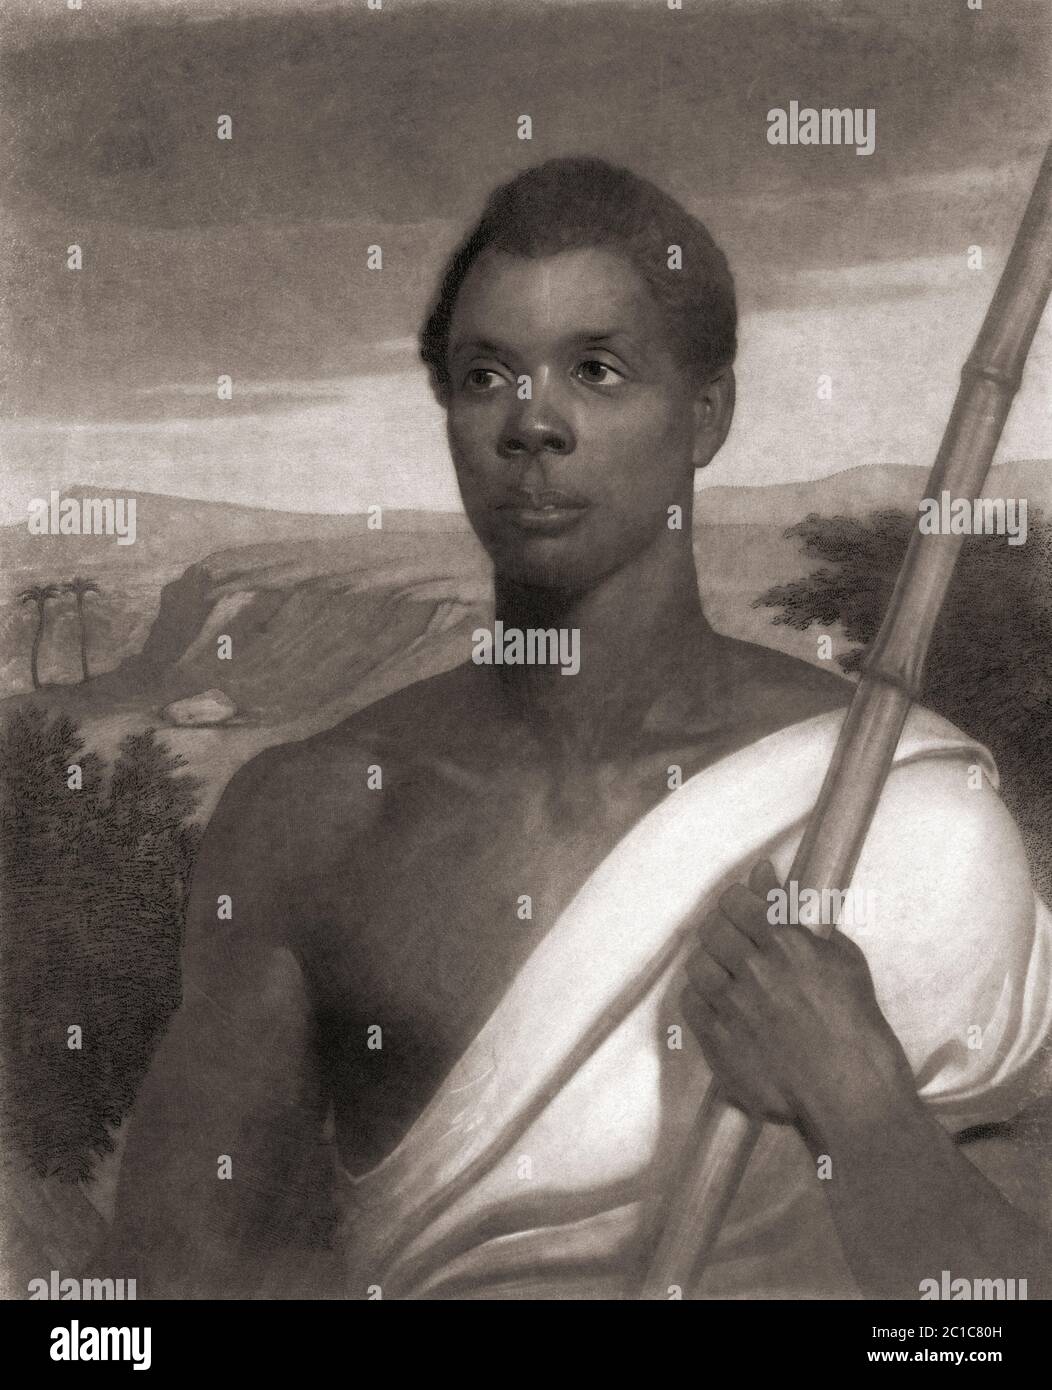 Joseph Cinqué, c. 1814 - c. 1879, Anführer der Revolte von 1839 auf dem Sklavenschiff La Amistad. Er wurde in dem heutigen Sierra Leone geboren. Er war die Hauptfigur des Steven Spielberg Films „Amistad“, der die Ereignisse nachstellte. Im Film wurde er von Djimon Hounsou gespielt. Nach einem Stich von John Sartain nach dem Gemälde von Nathaniel Jocelyn. Stockfoto